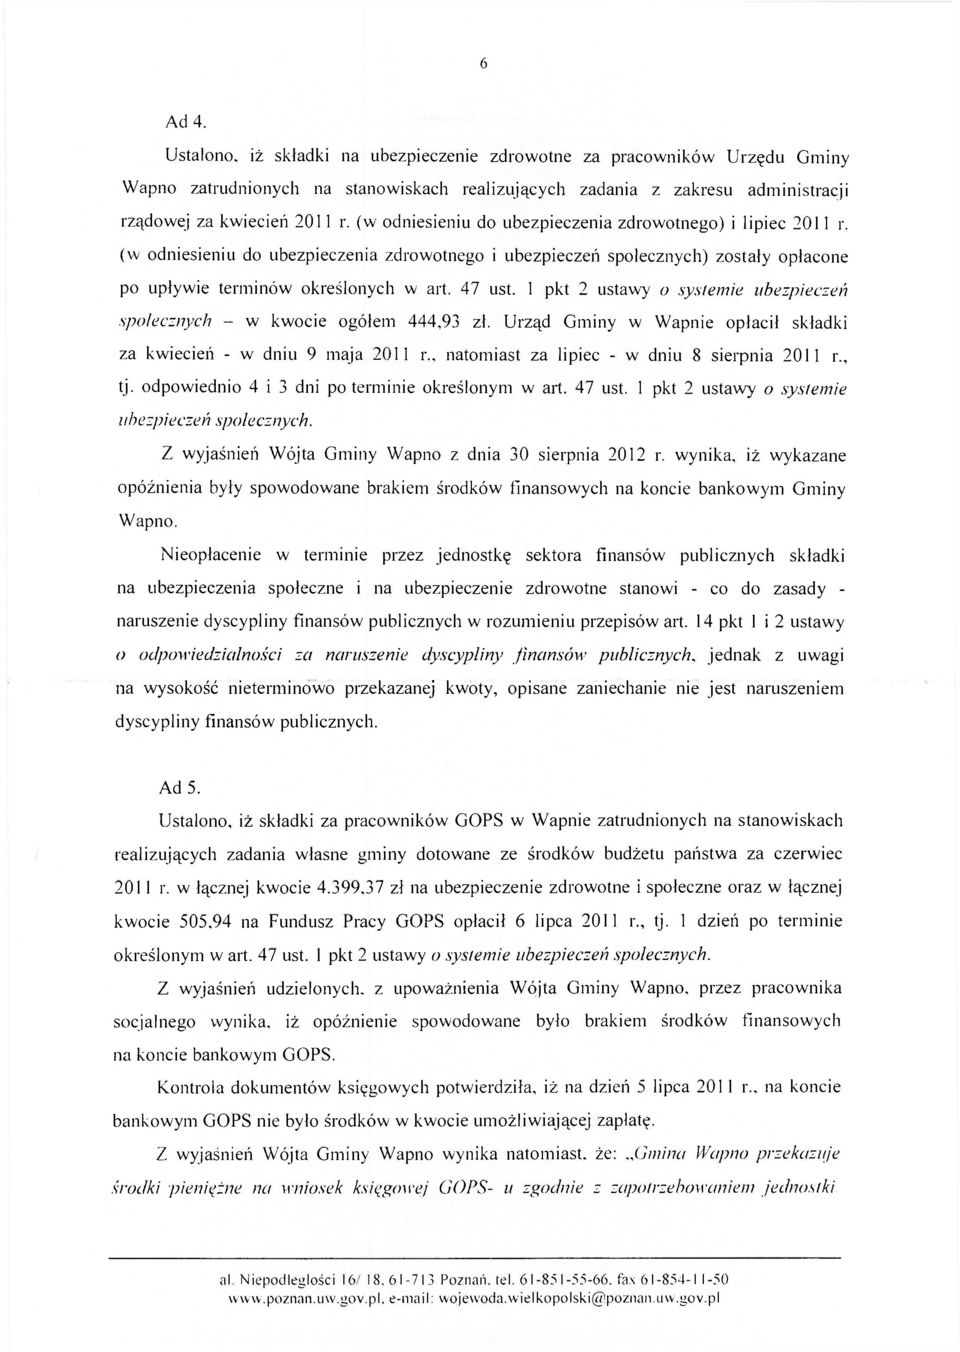 1 pkt 2 ustawy o systemie ubezpieczeń społecznych - w kwocie ogółem 444,93 zł. Urząd Gminy w Wapnie opłacił składki za kwiecień - w dniu 9 maja 2011 r., natomiast za lipiec - w dniu 8 sierpnia 2011 r.